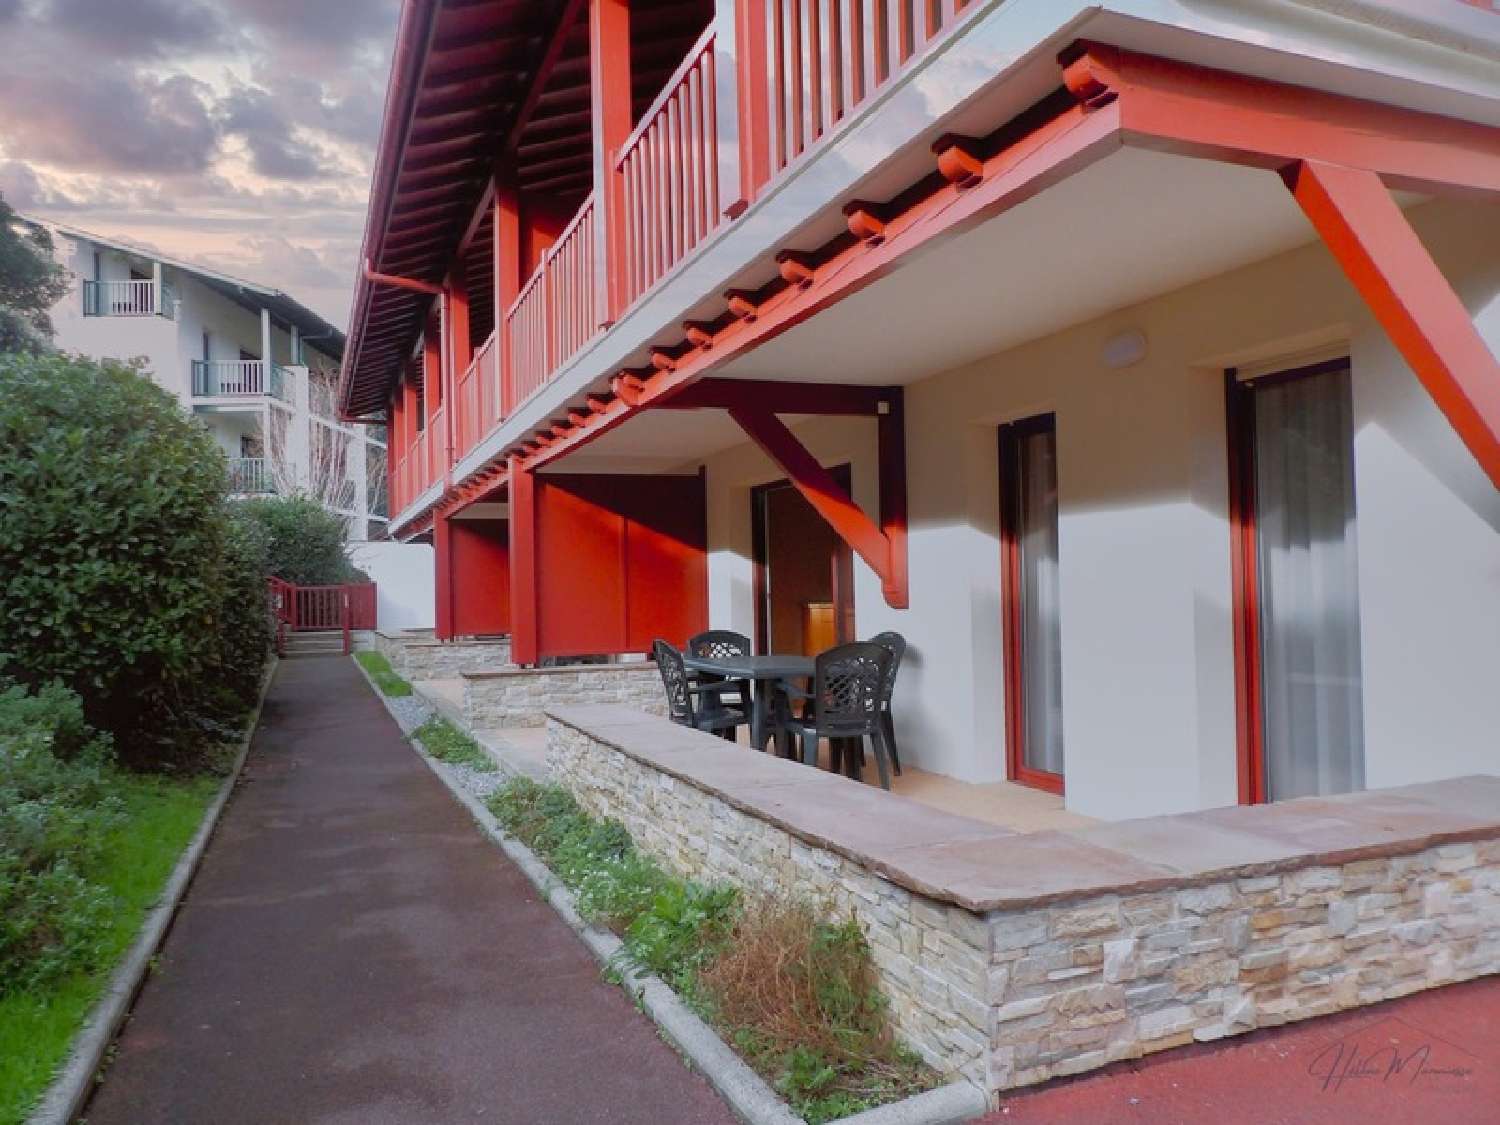  à vendre appartement Saint-Jean-de-Luz Pyrénées-Atlantiques 2